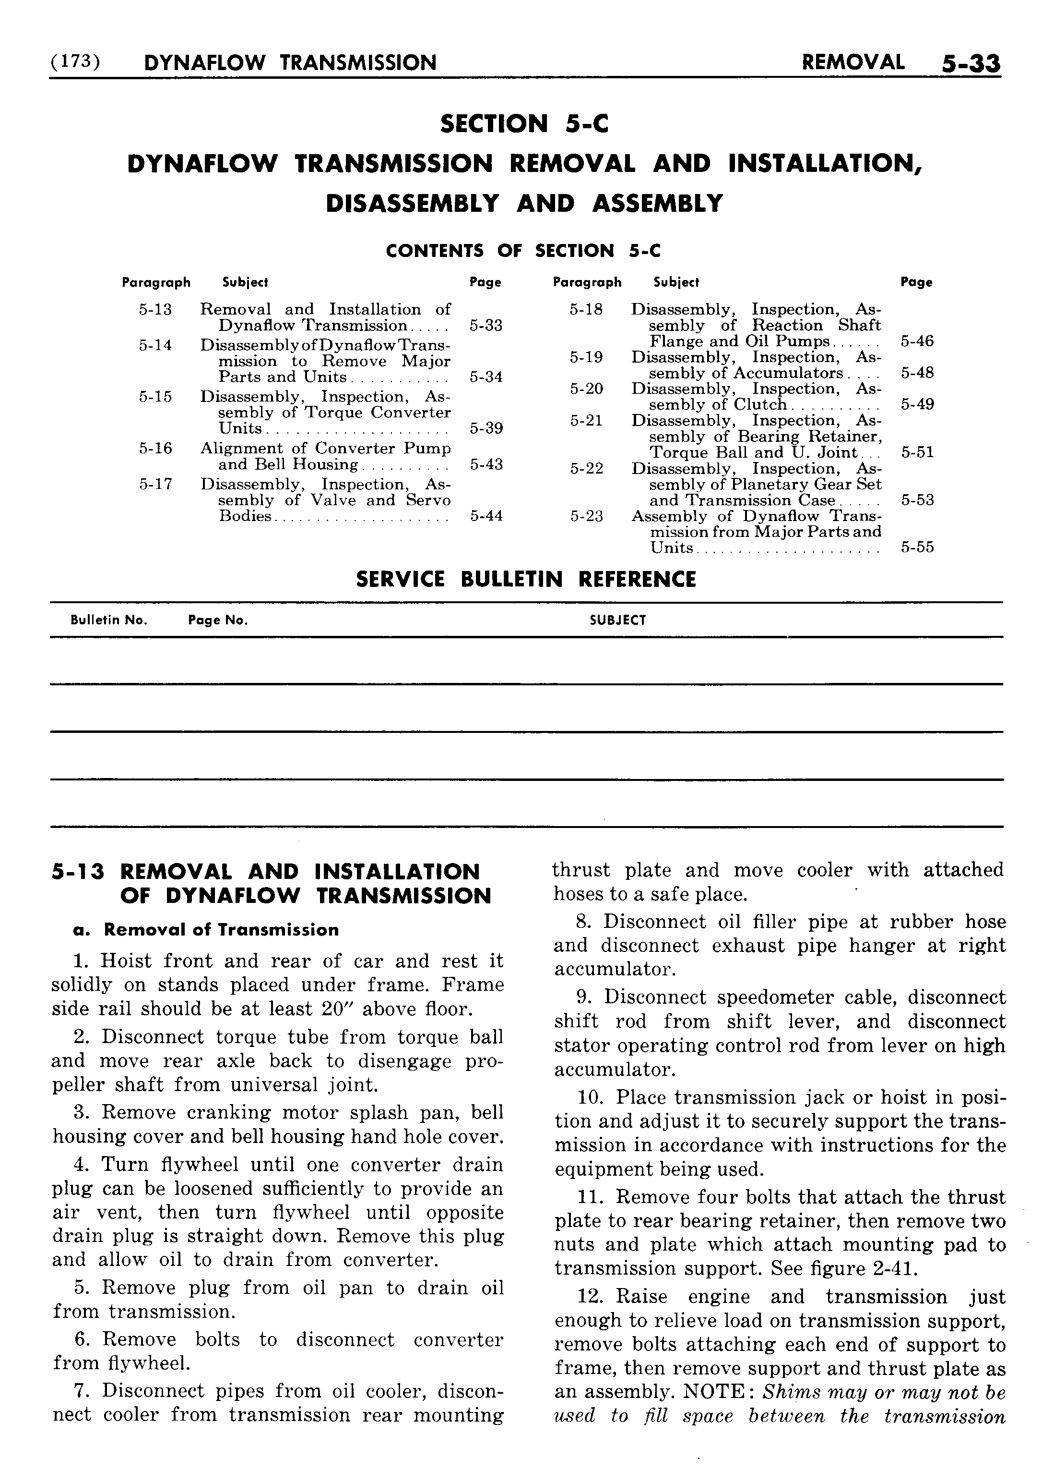 n_06 1955 Buick Shop Manual - Dynaflow-033-033.jpg